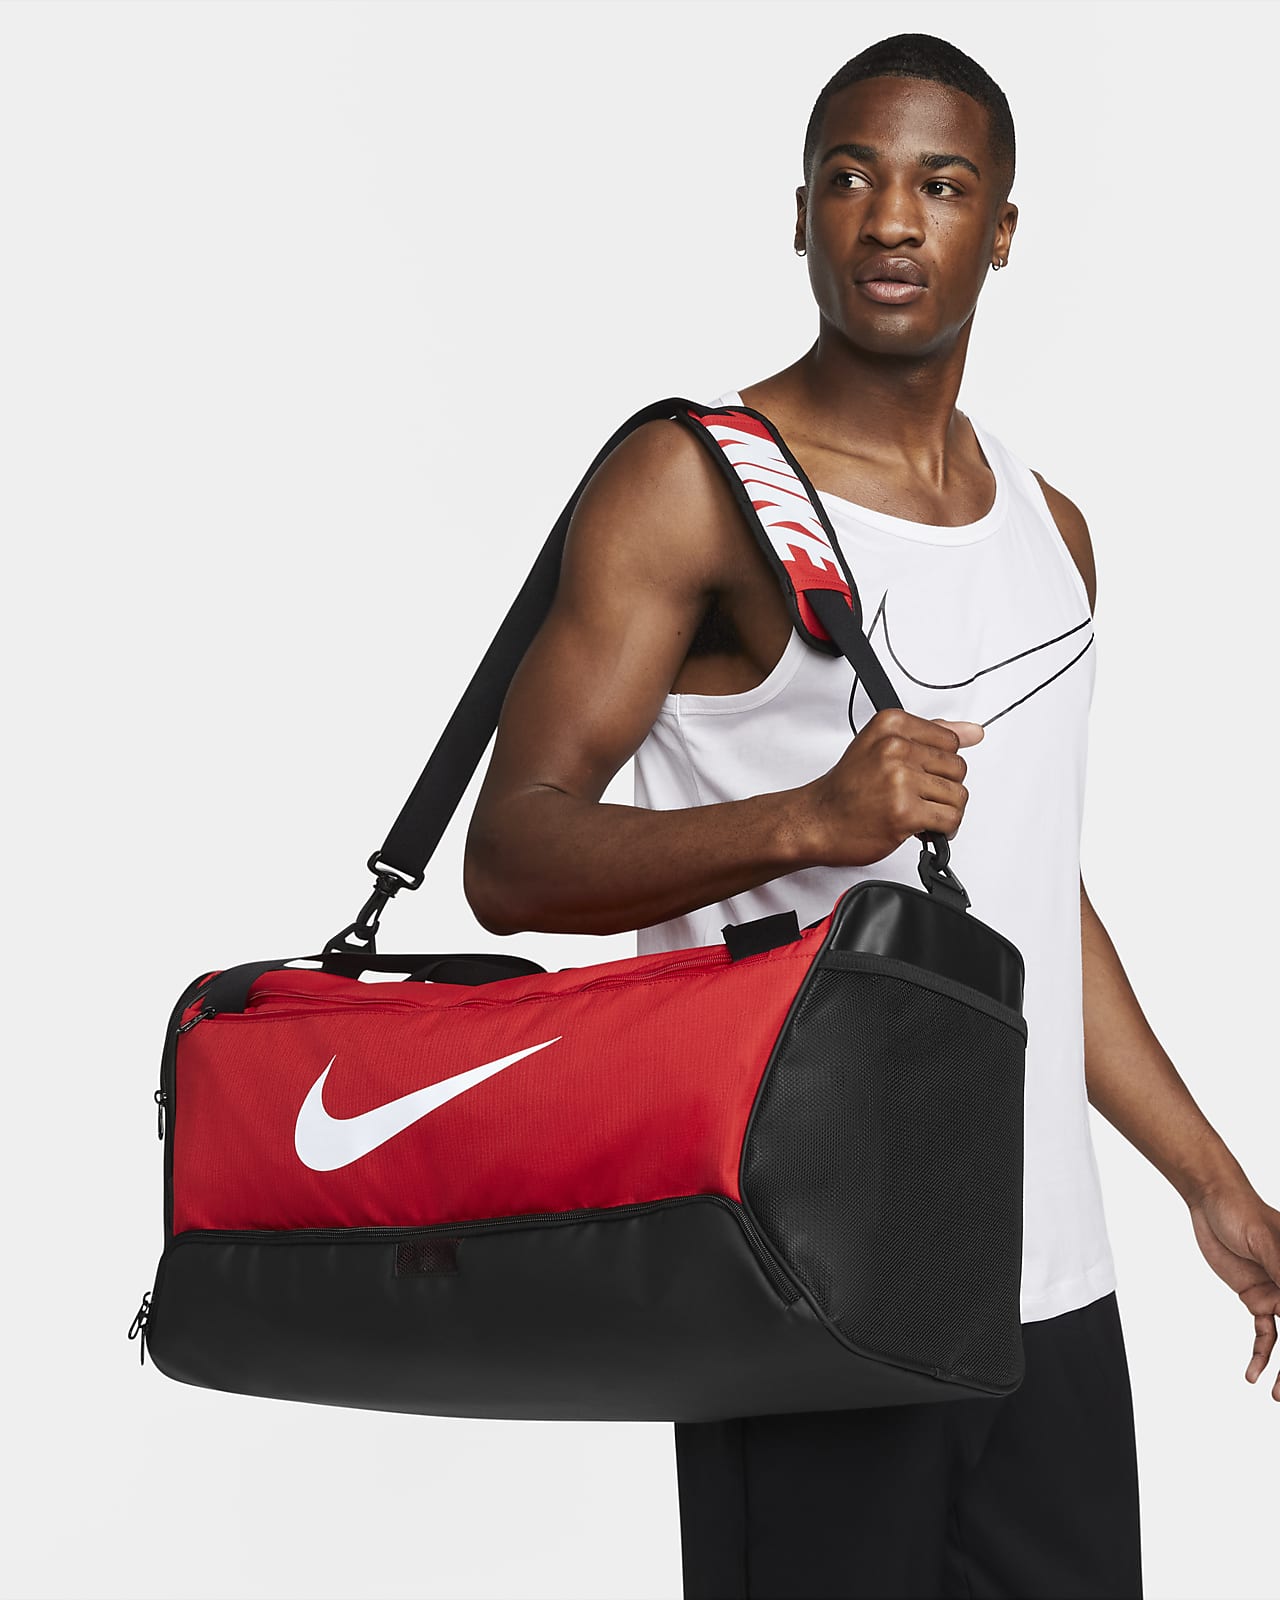 Τσάντα γυμναστηρίου για προπόνηση Nike Brasilia 9.5 (μέγεθος Medium, 60 L)